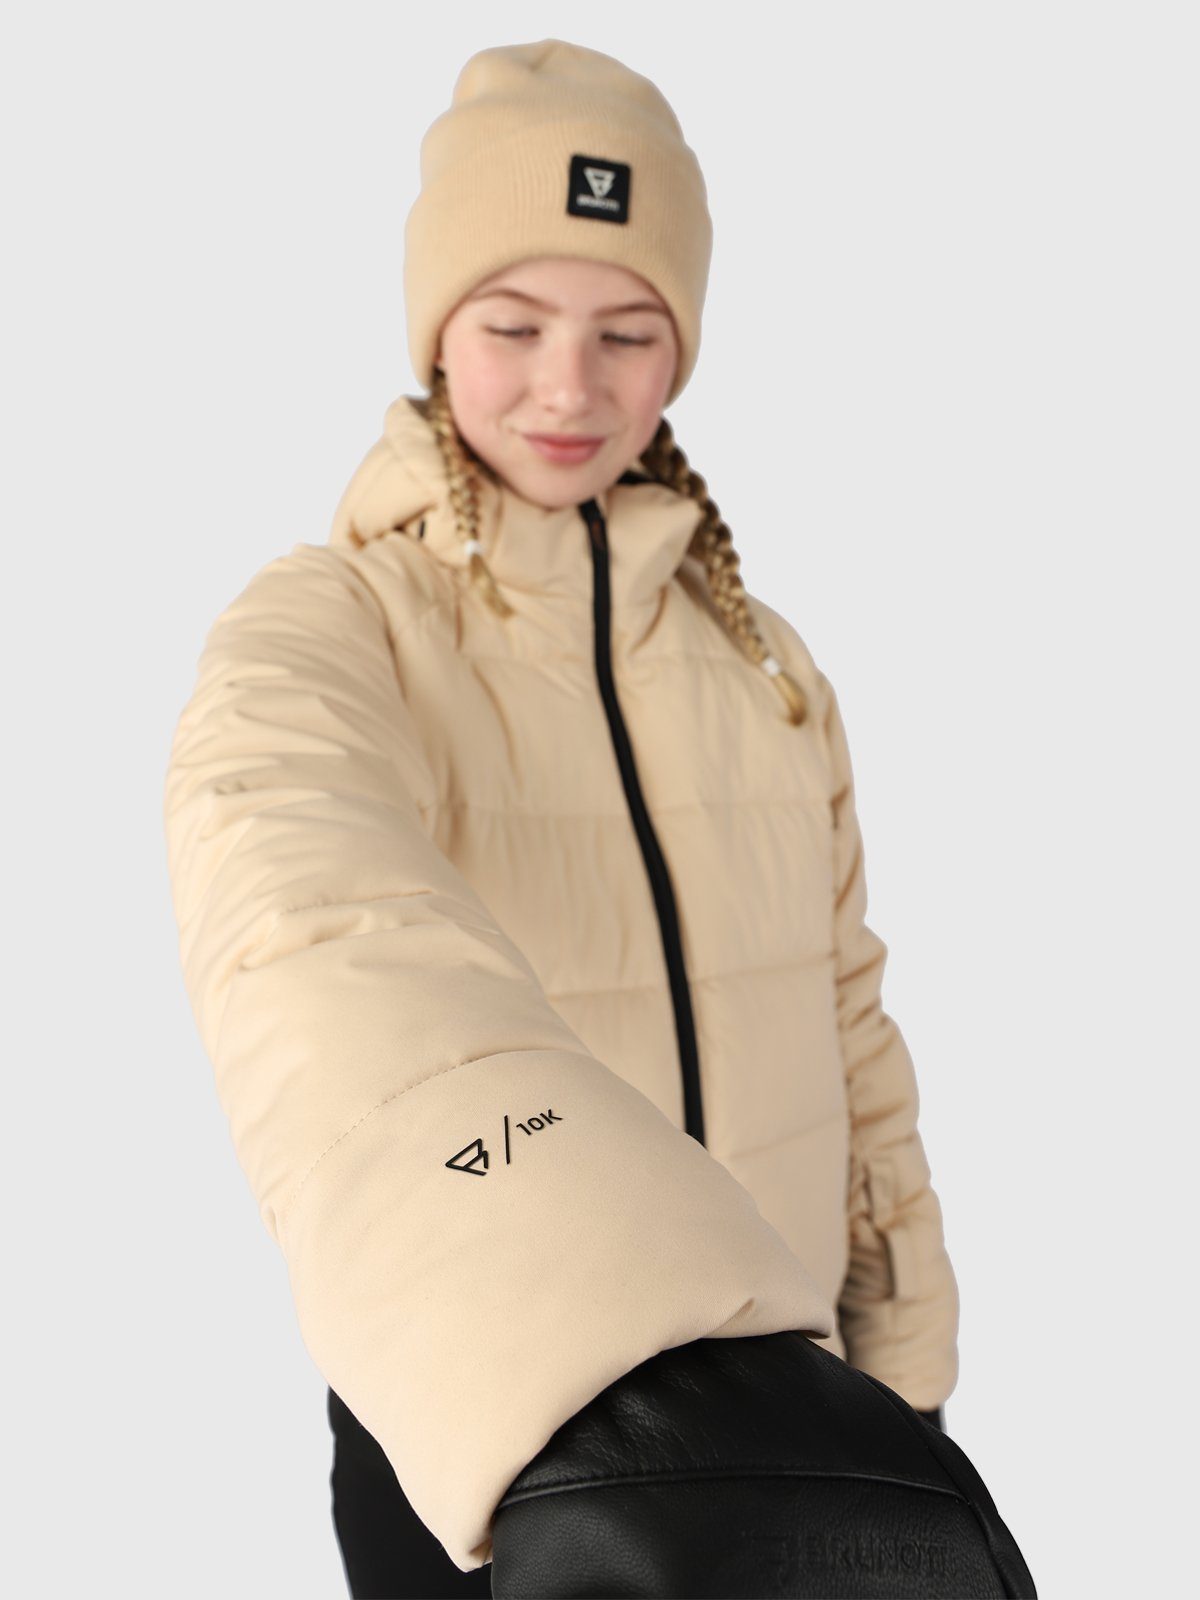 Schneejacke canvas Girls Snow Kinder - für Suncrown Jacket Brunotti